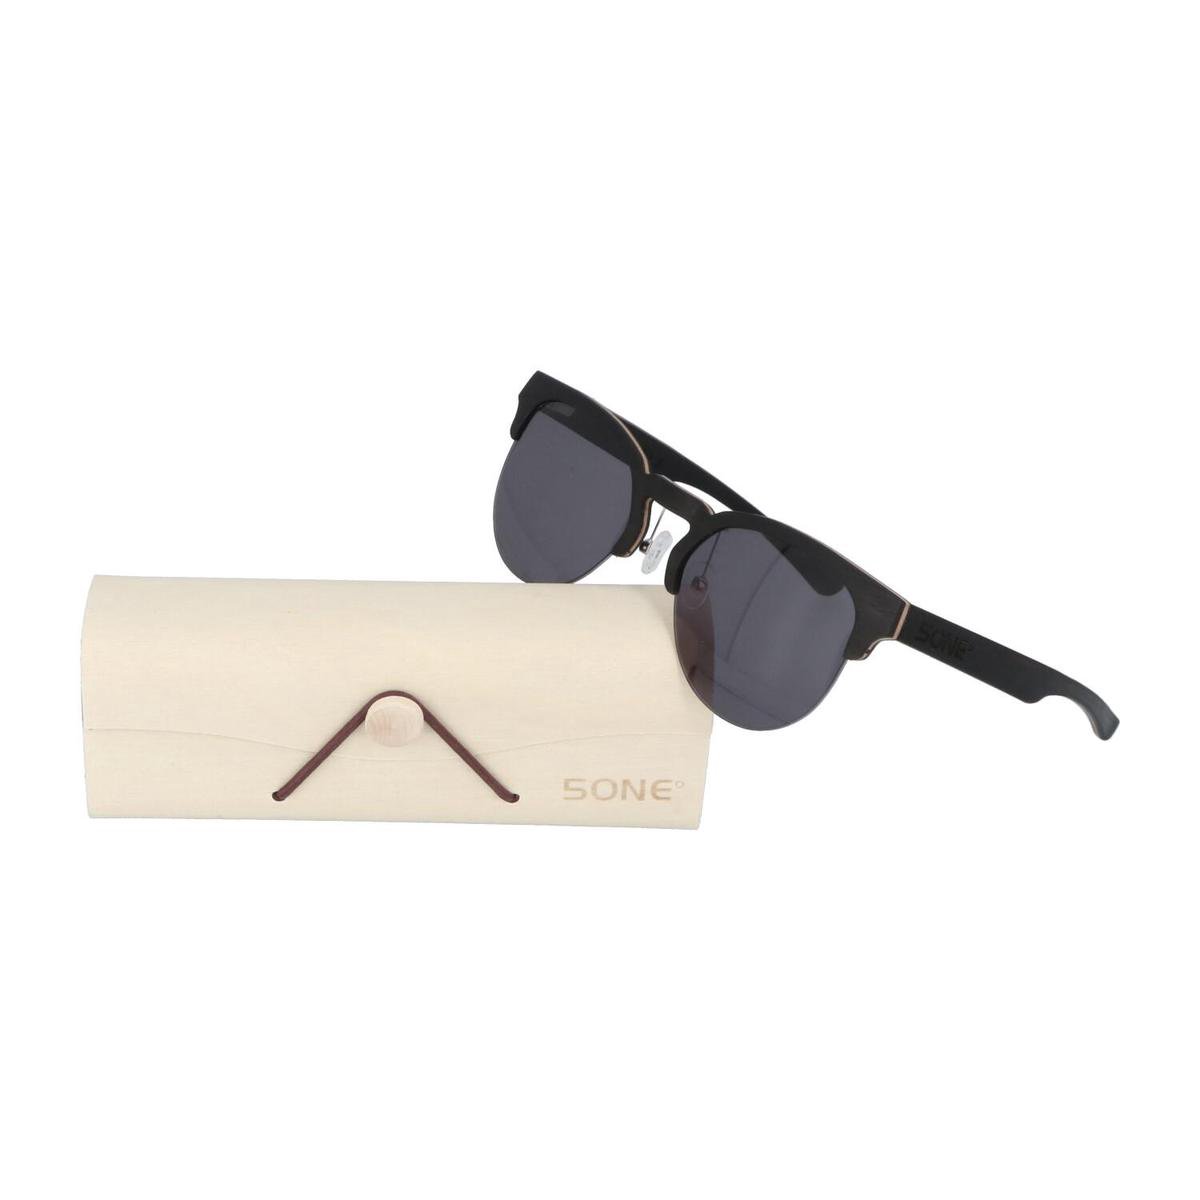 5one® Classic Sports Grey - Ebony houten zonnebril - sportief model